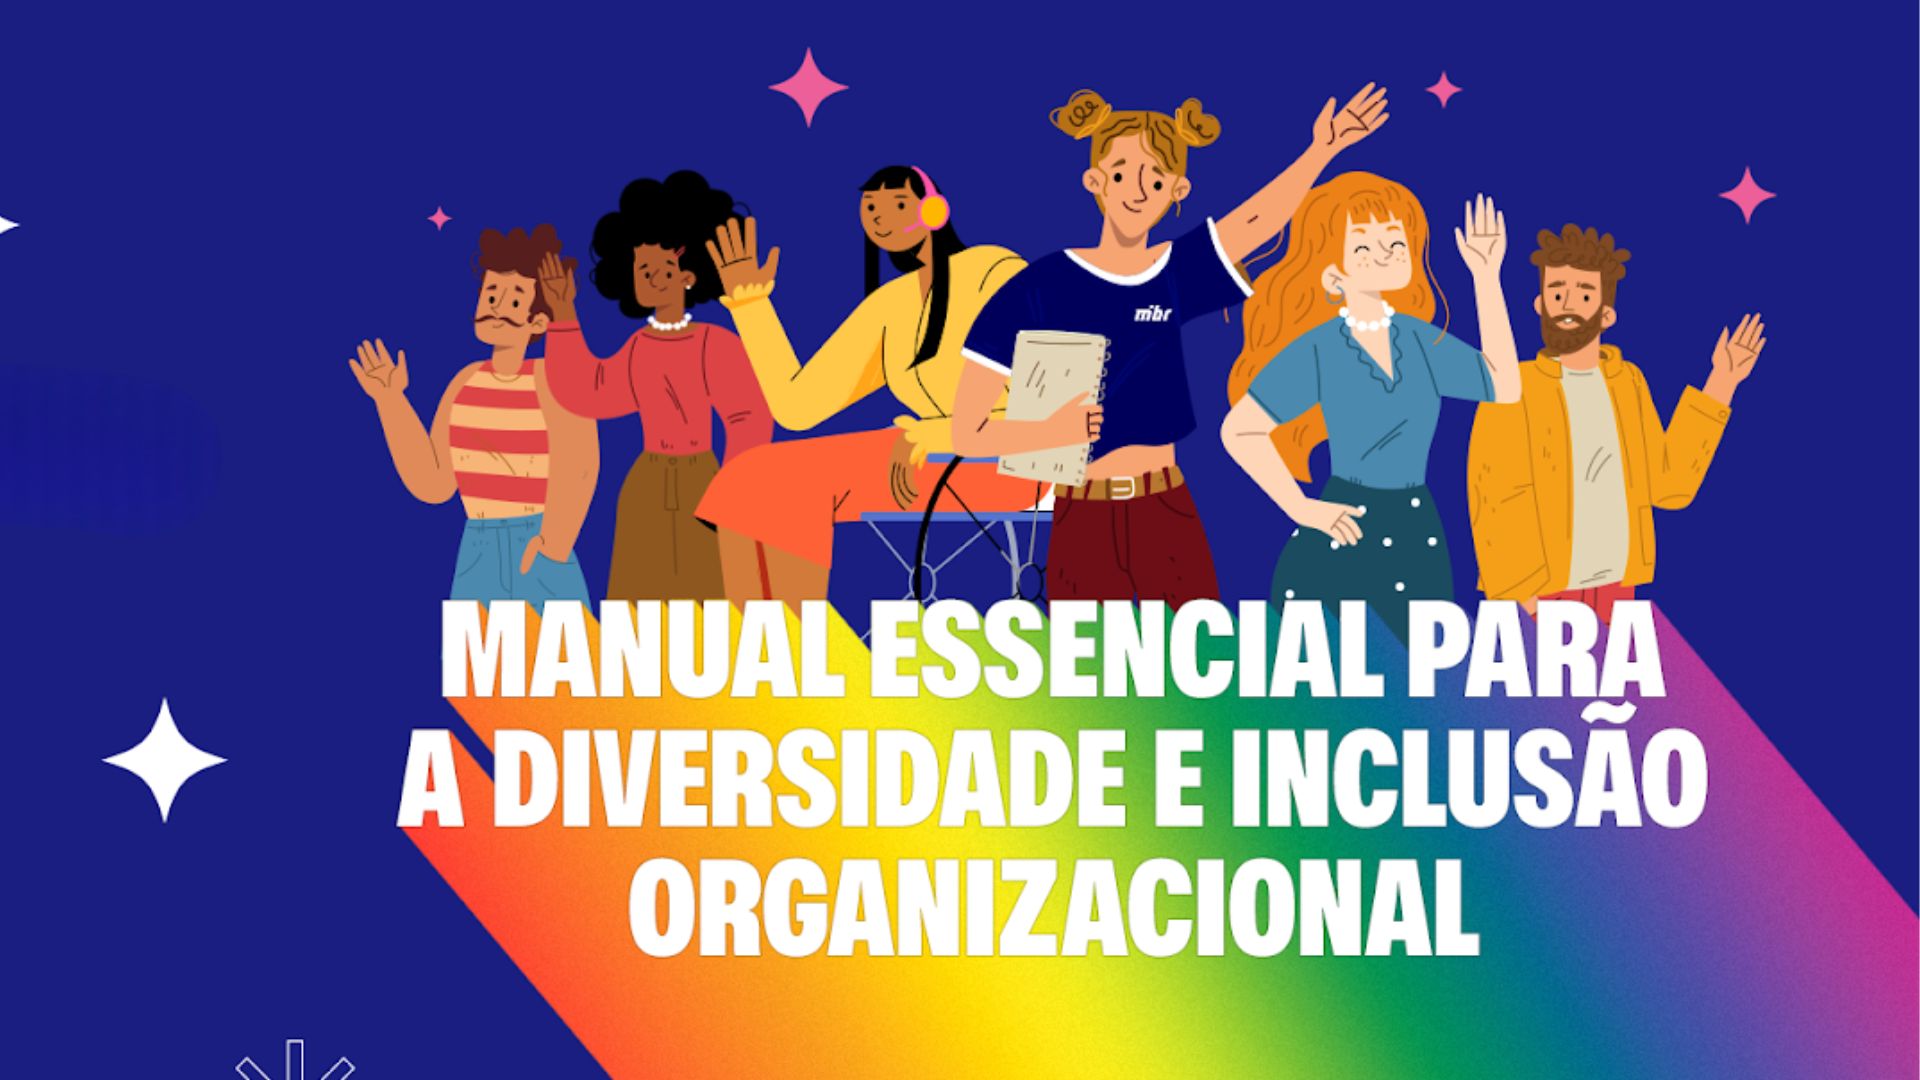 wibr, manual, diversidade, inclusão, LGBTQIAPN+